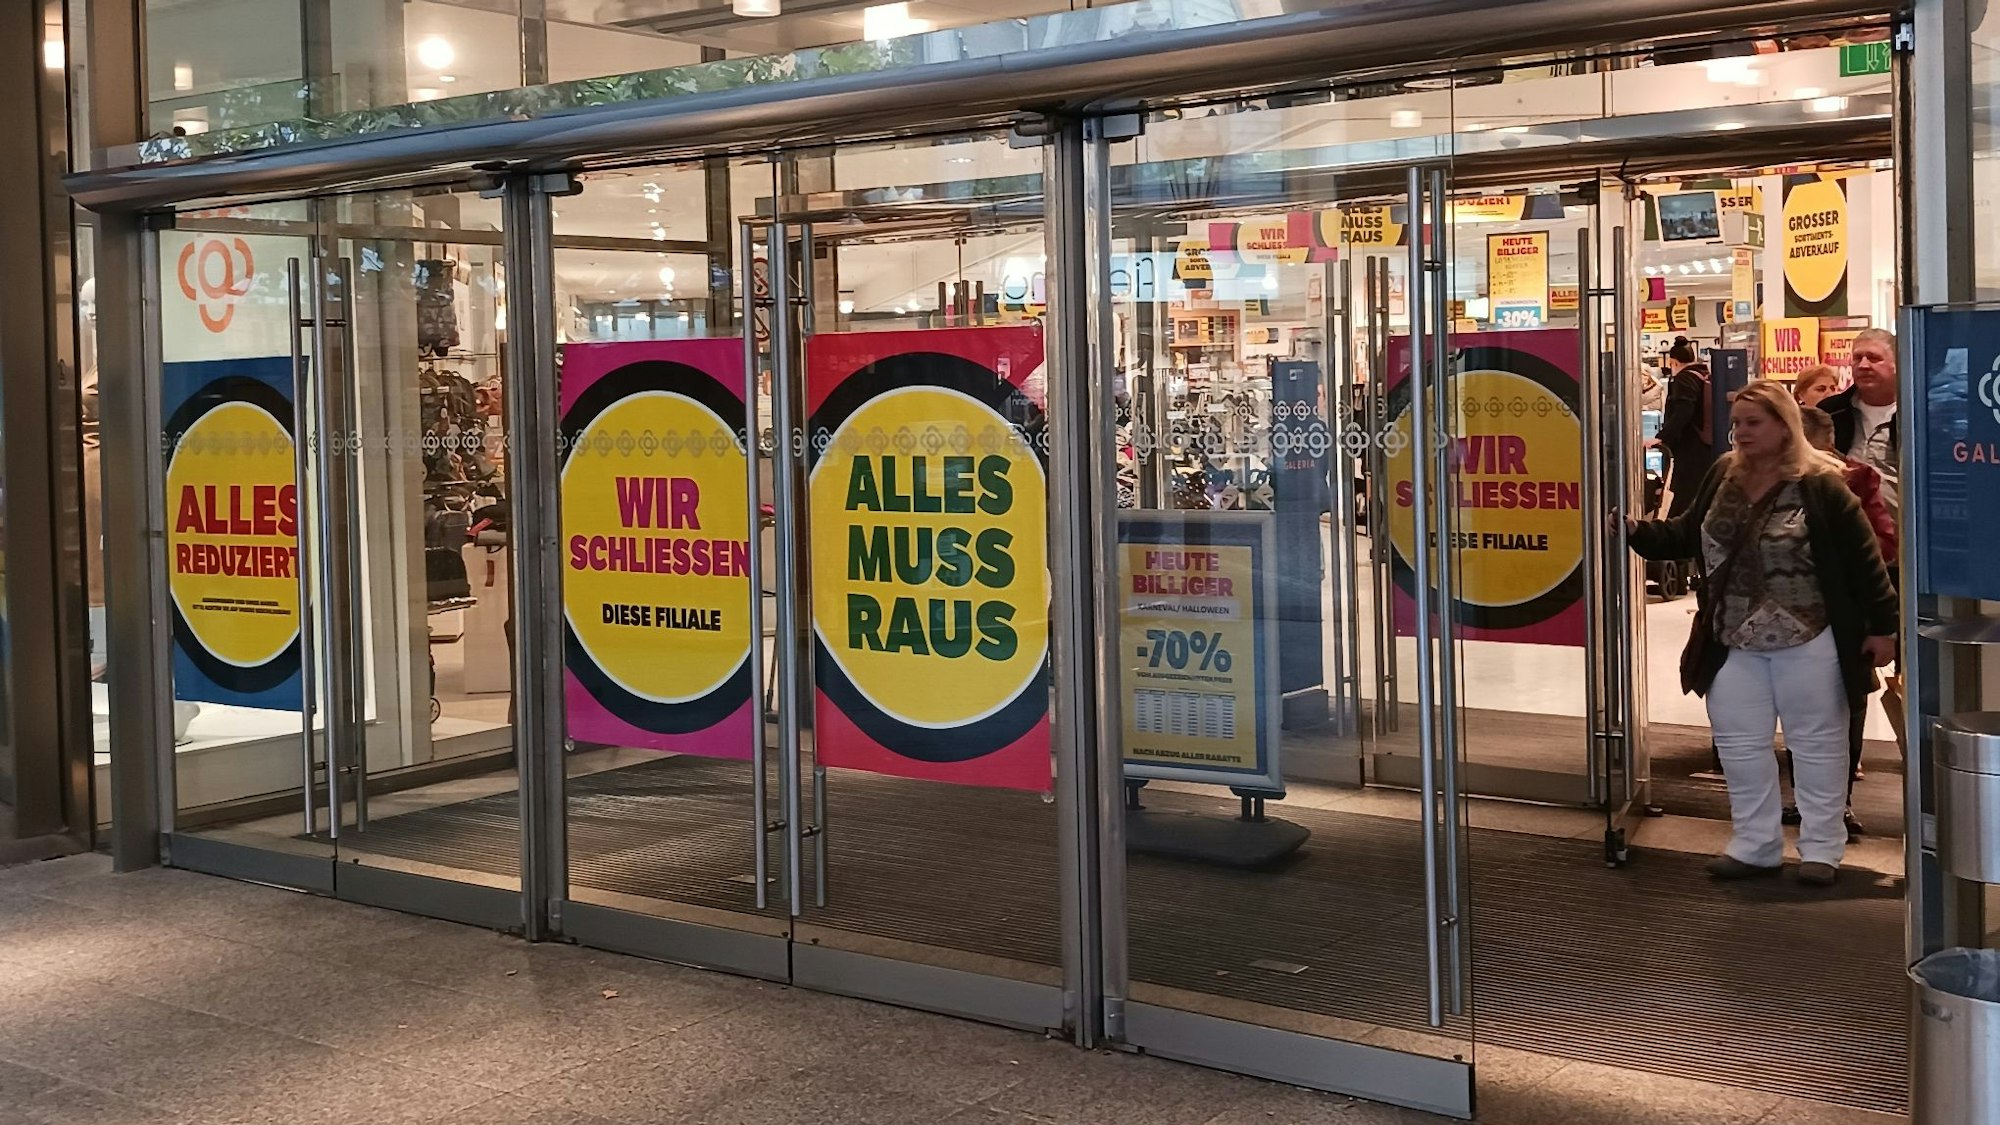 „Alles reduziert“, „Alles muss raus“, „Wir schließen“ steht auf Plakaten im Eingangsbereich des Siegburger Kaufhofs